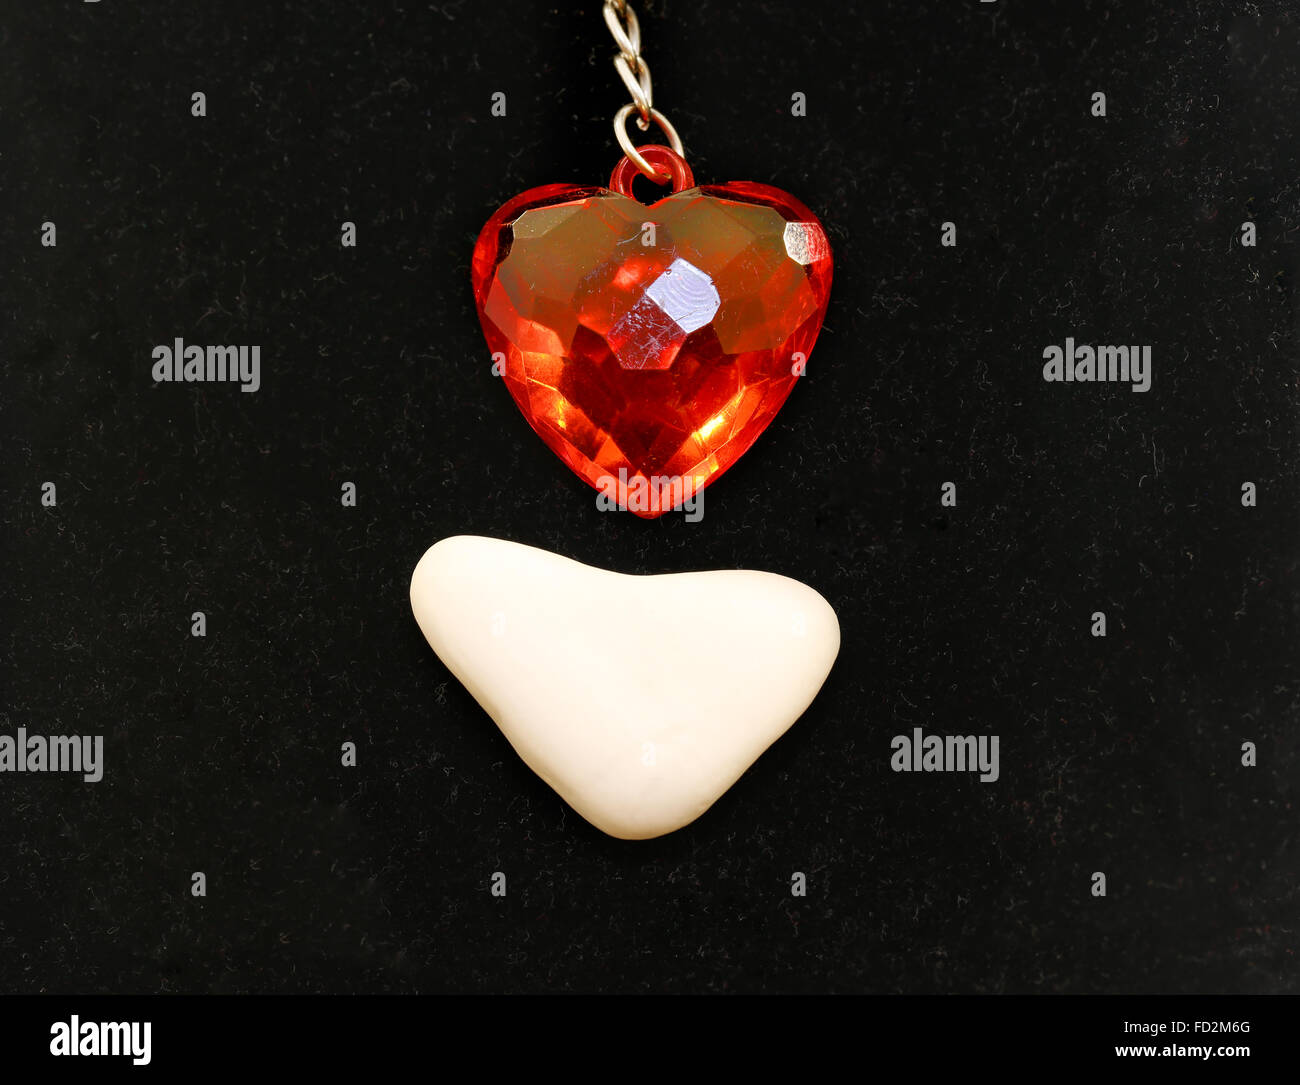 Coeur rouge en plastique et une pierre blanche en forme de cœur photographié close up sur fond noir Banque D'Images